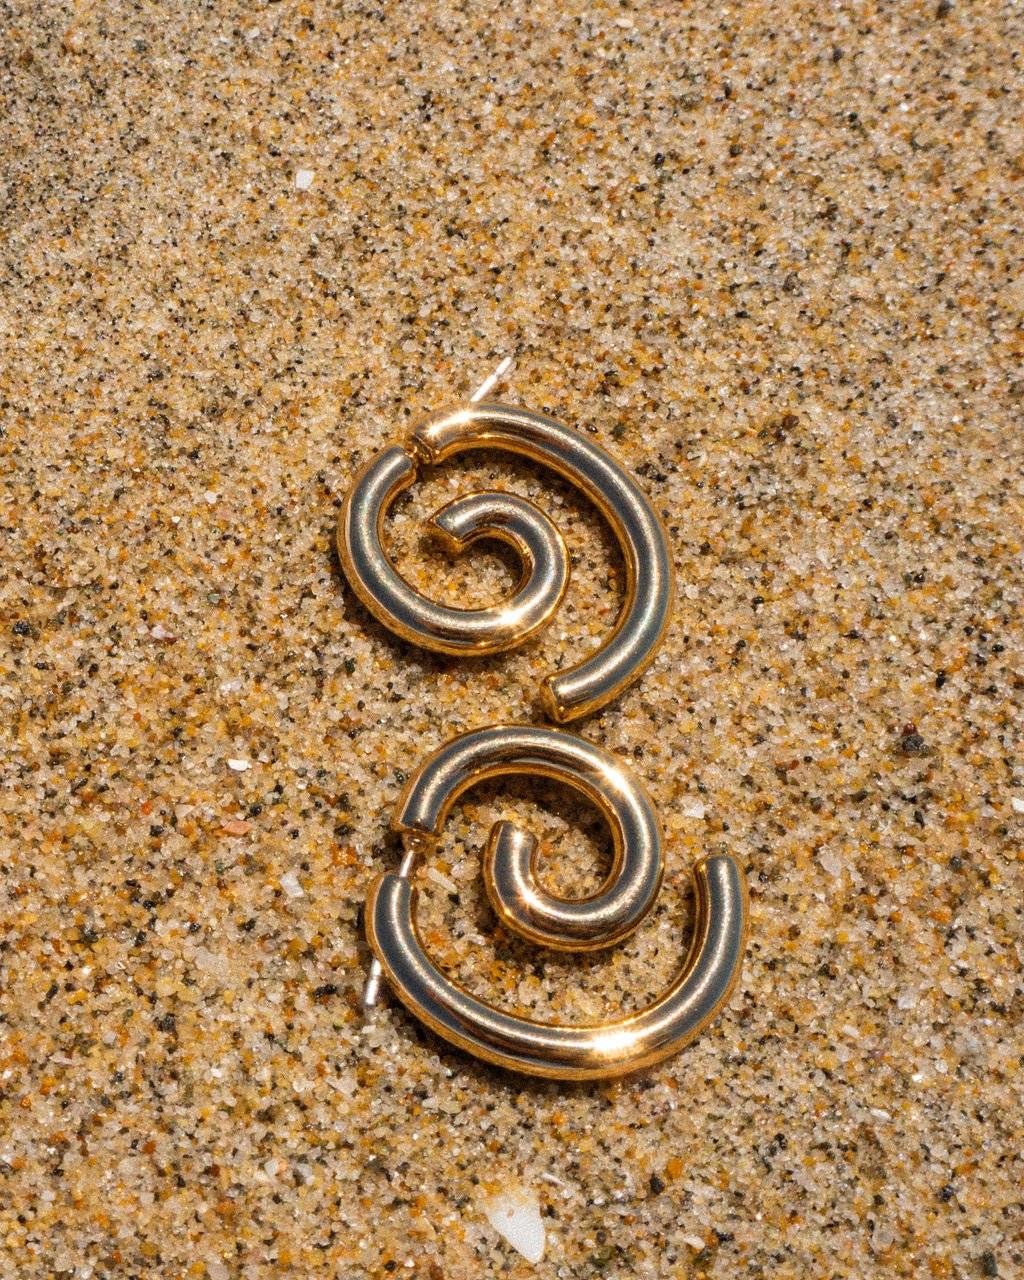 Shell Beach Earrings | Sivan Ayla x Luv Aj-Earrings-BELLA n' BEAR